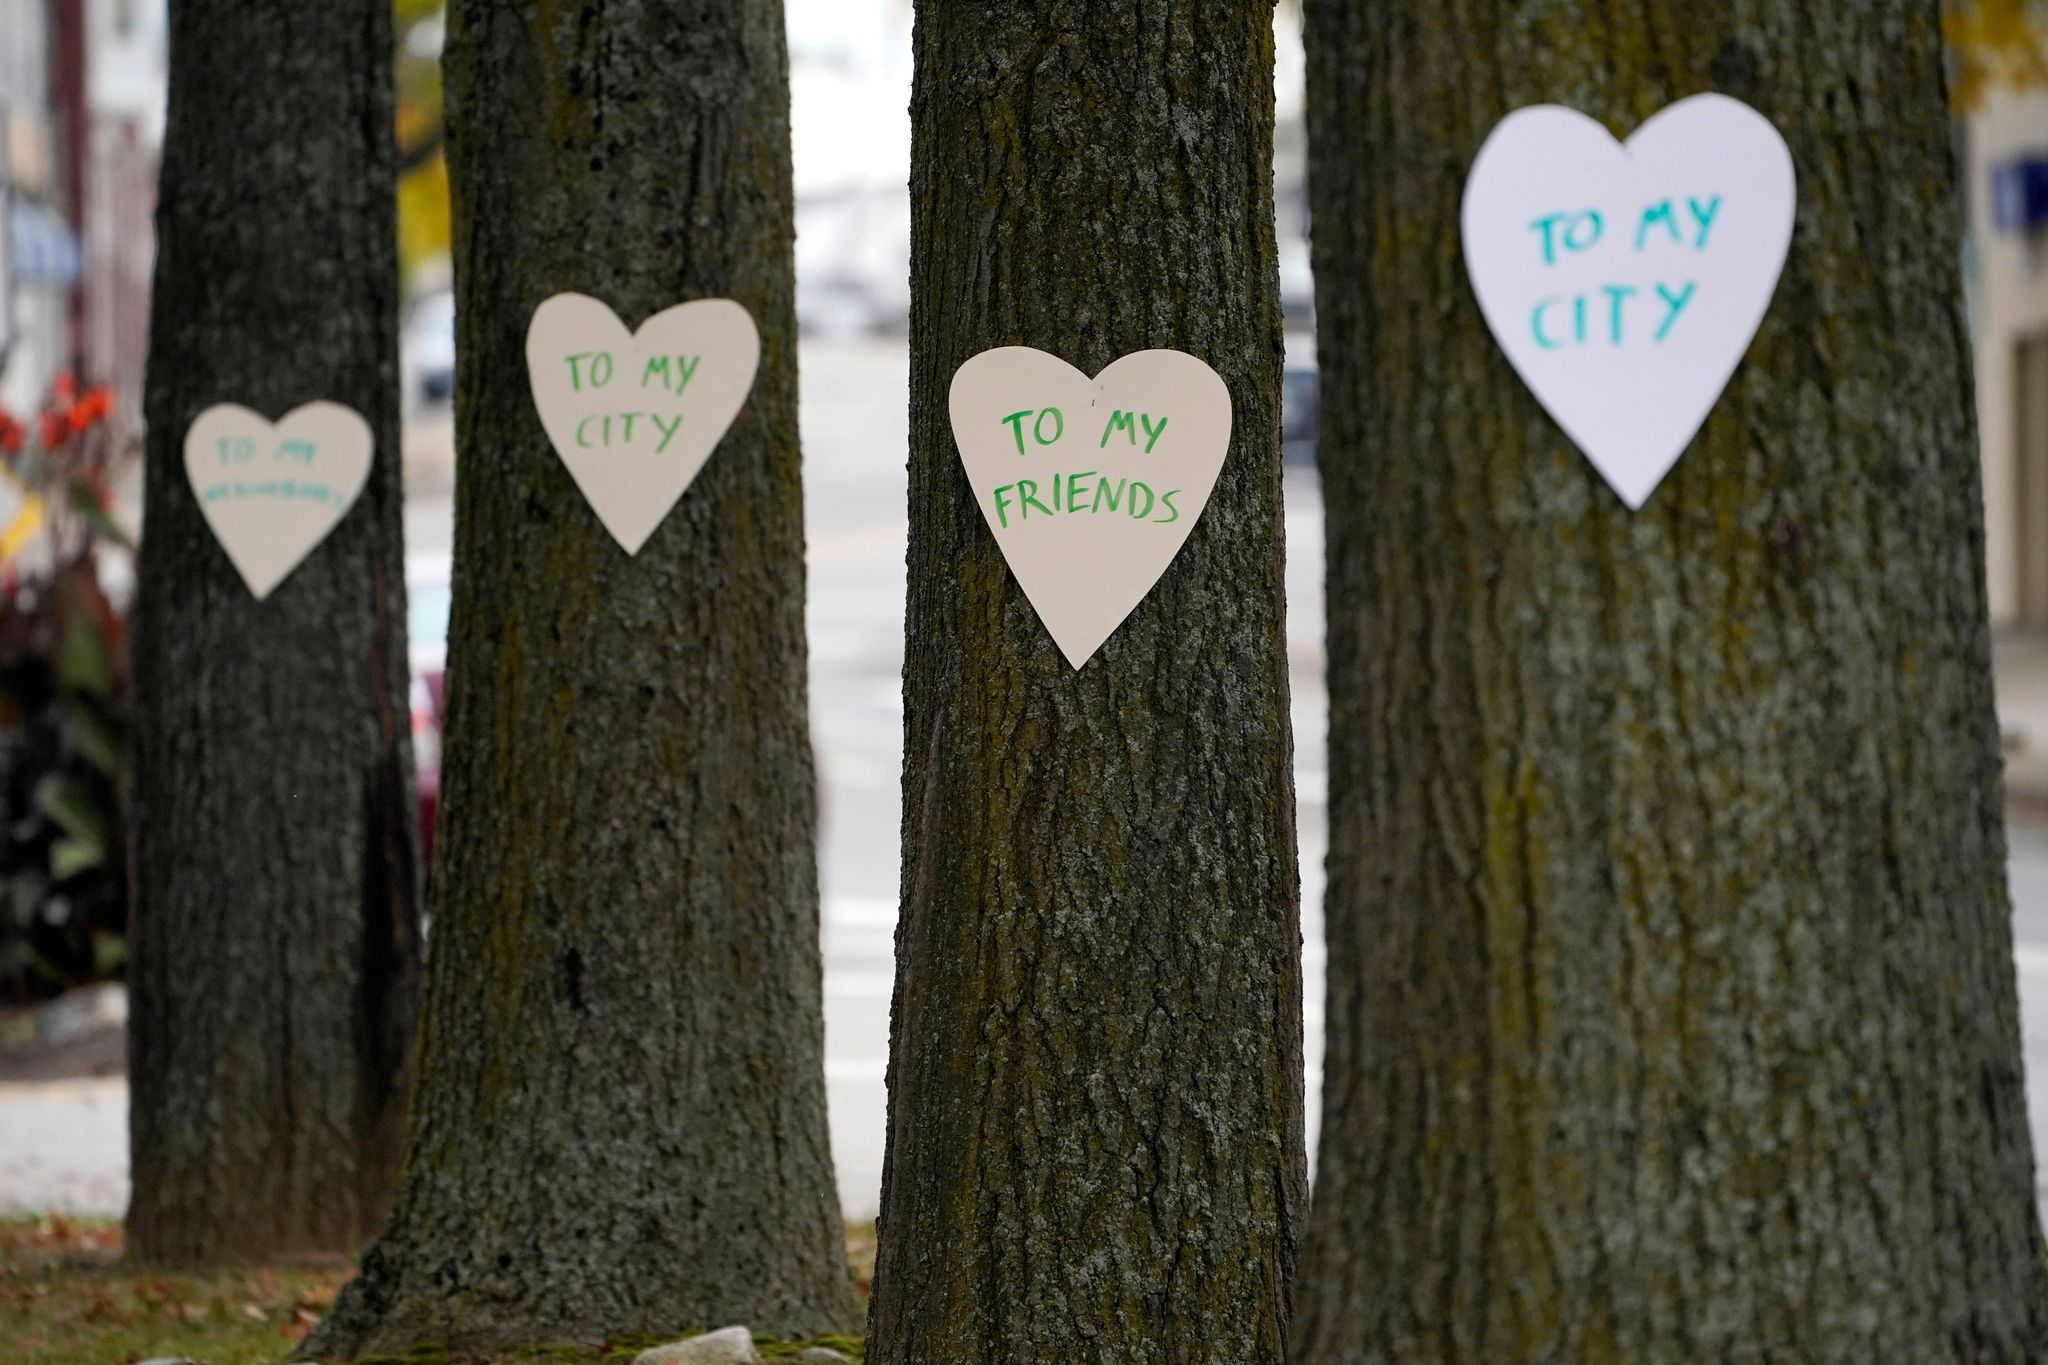 Papierherzen mit positiven Botschaften schmücken nach der Schusswaffenattacke mit 18 Toten Bäume in der Innenstadt von Lewiston. Die Schilder sind einige der 100 Herzen, die eine Frau aufgehängt hat, um ihre Unterstützung für die Gemeinschaft zu zeigen.